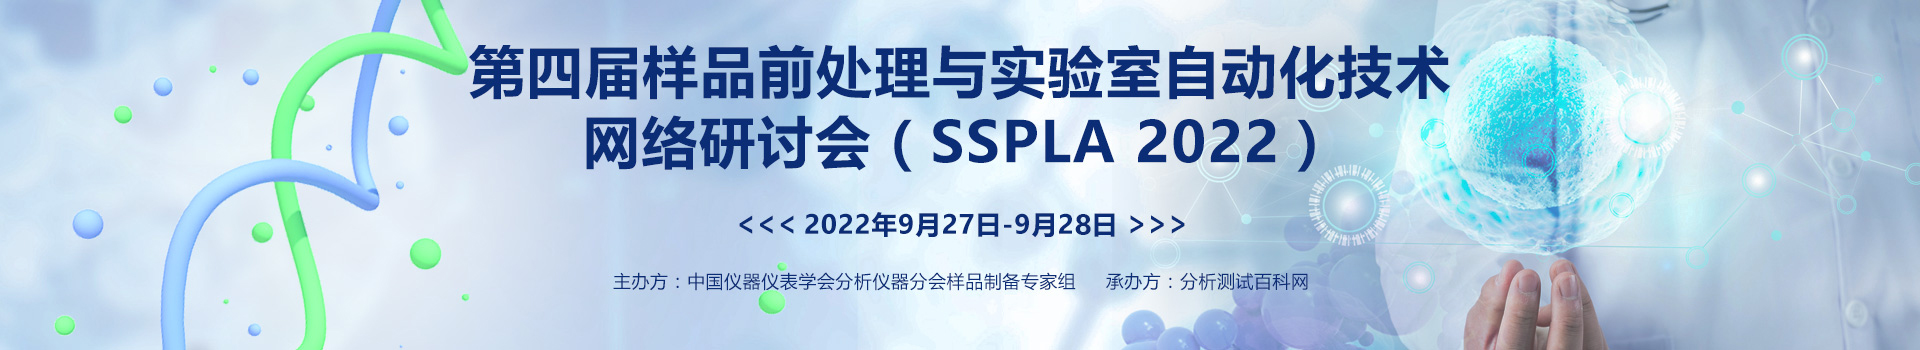 第四届样品前处理与实验室自动化技术网络研讨会（SSPLA 2022）